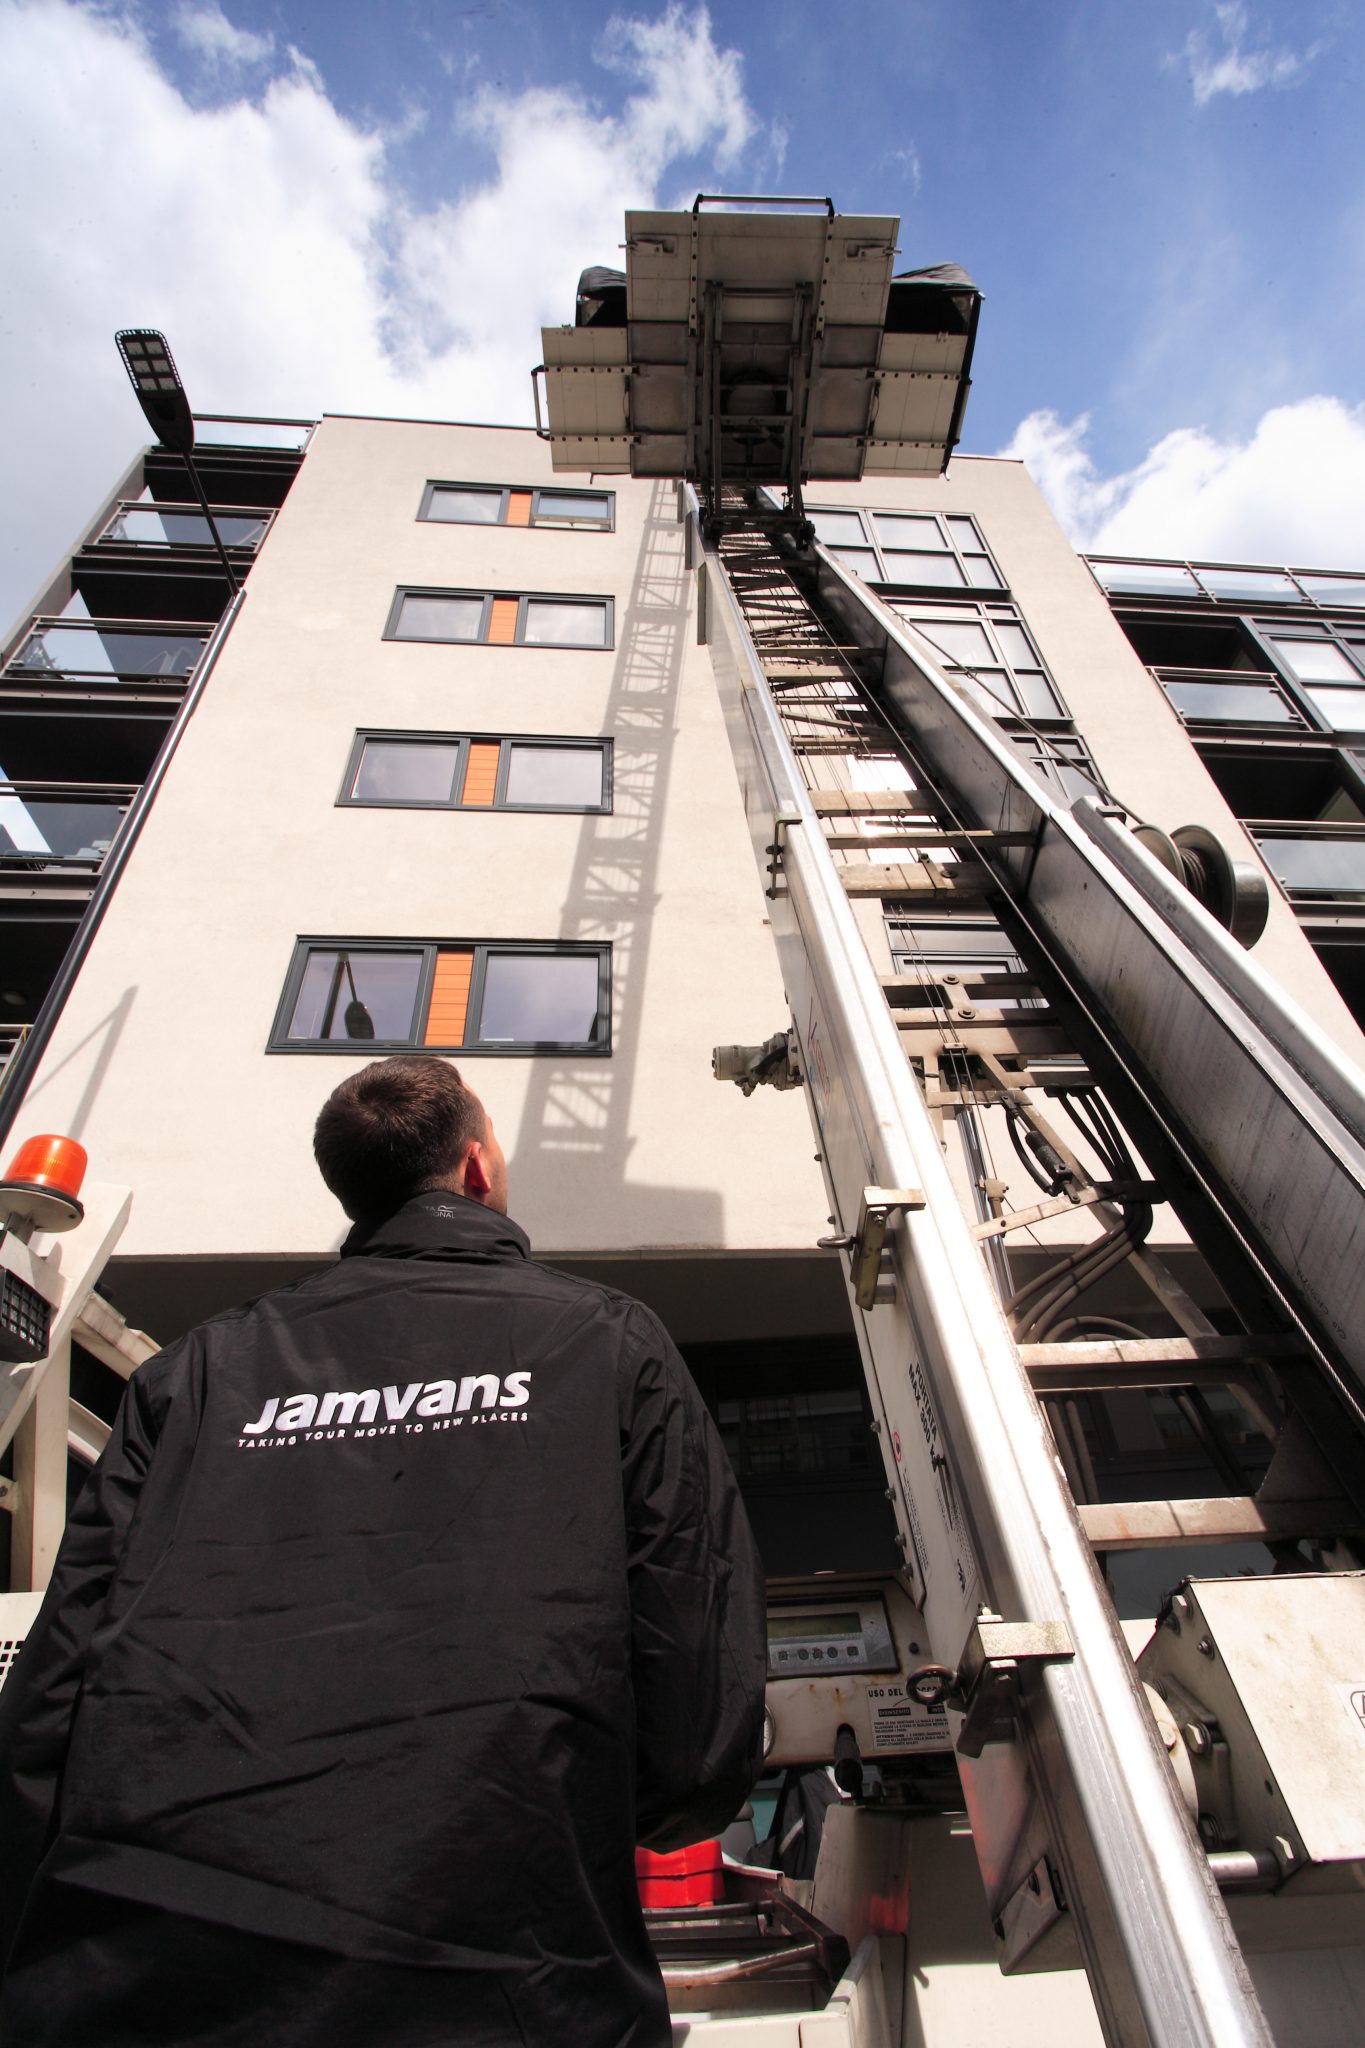 JamVans Man & Van Removals in London